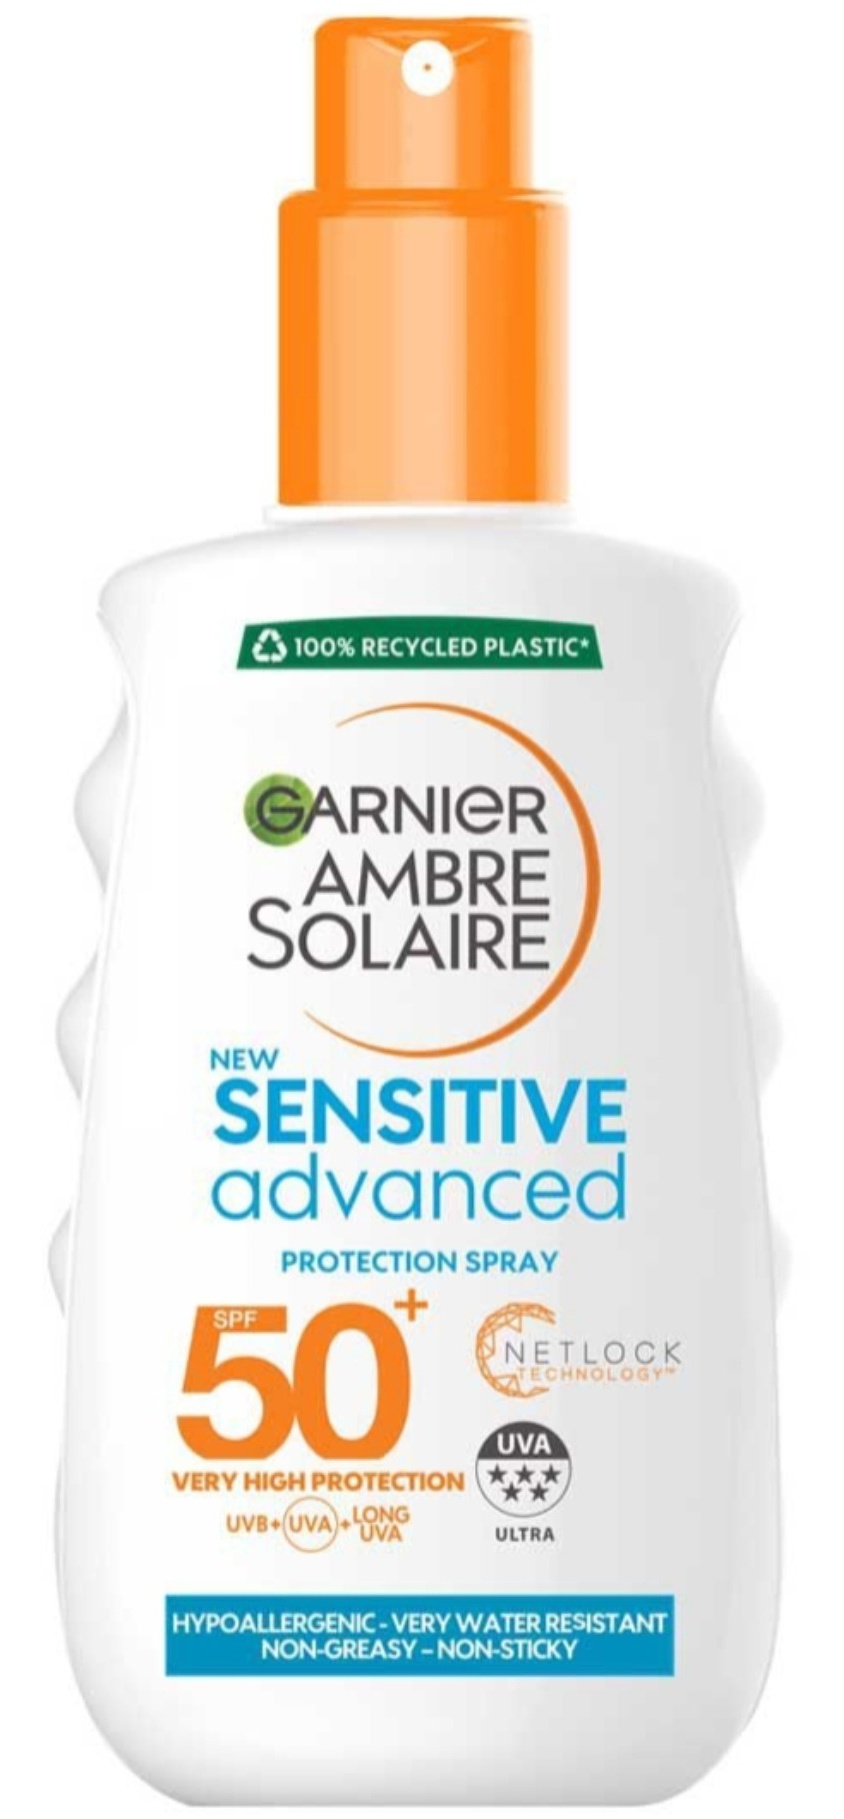 Garnier Ambre Solaire Sensitive Advanced Protection Cream SPF 50